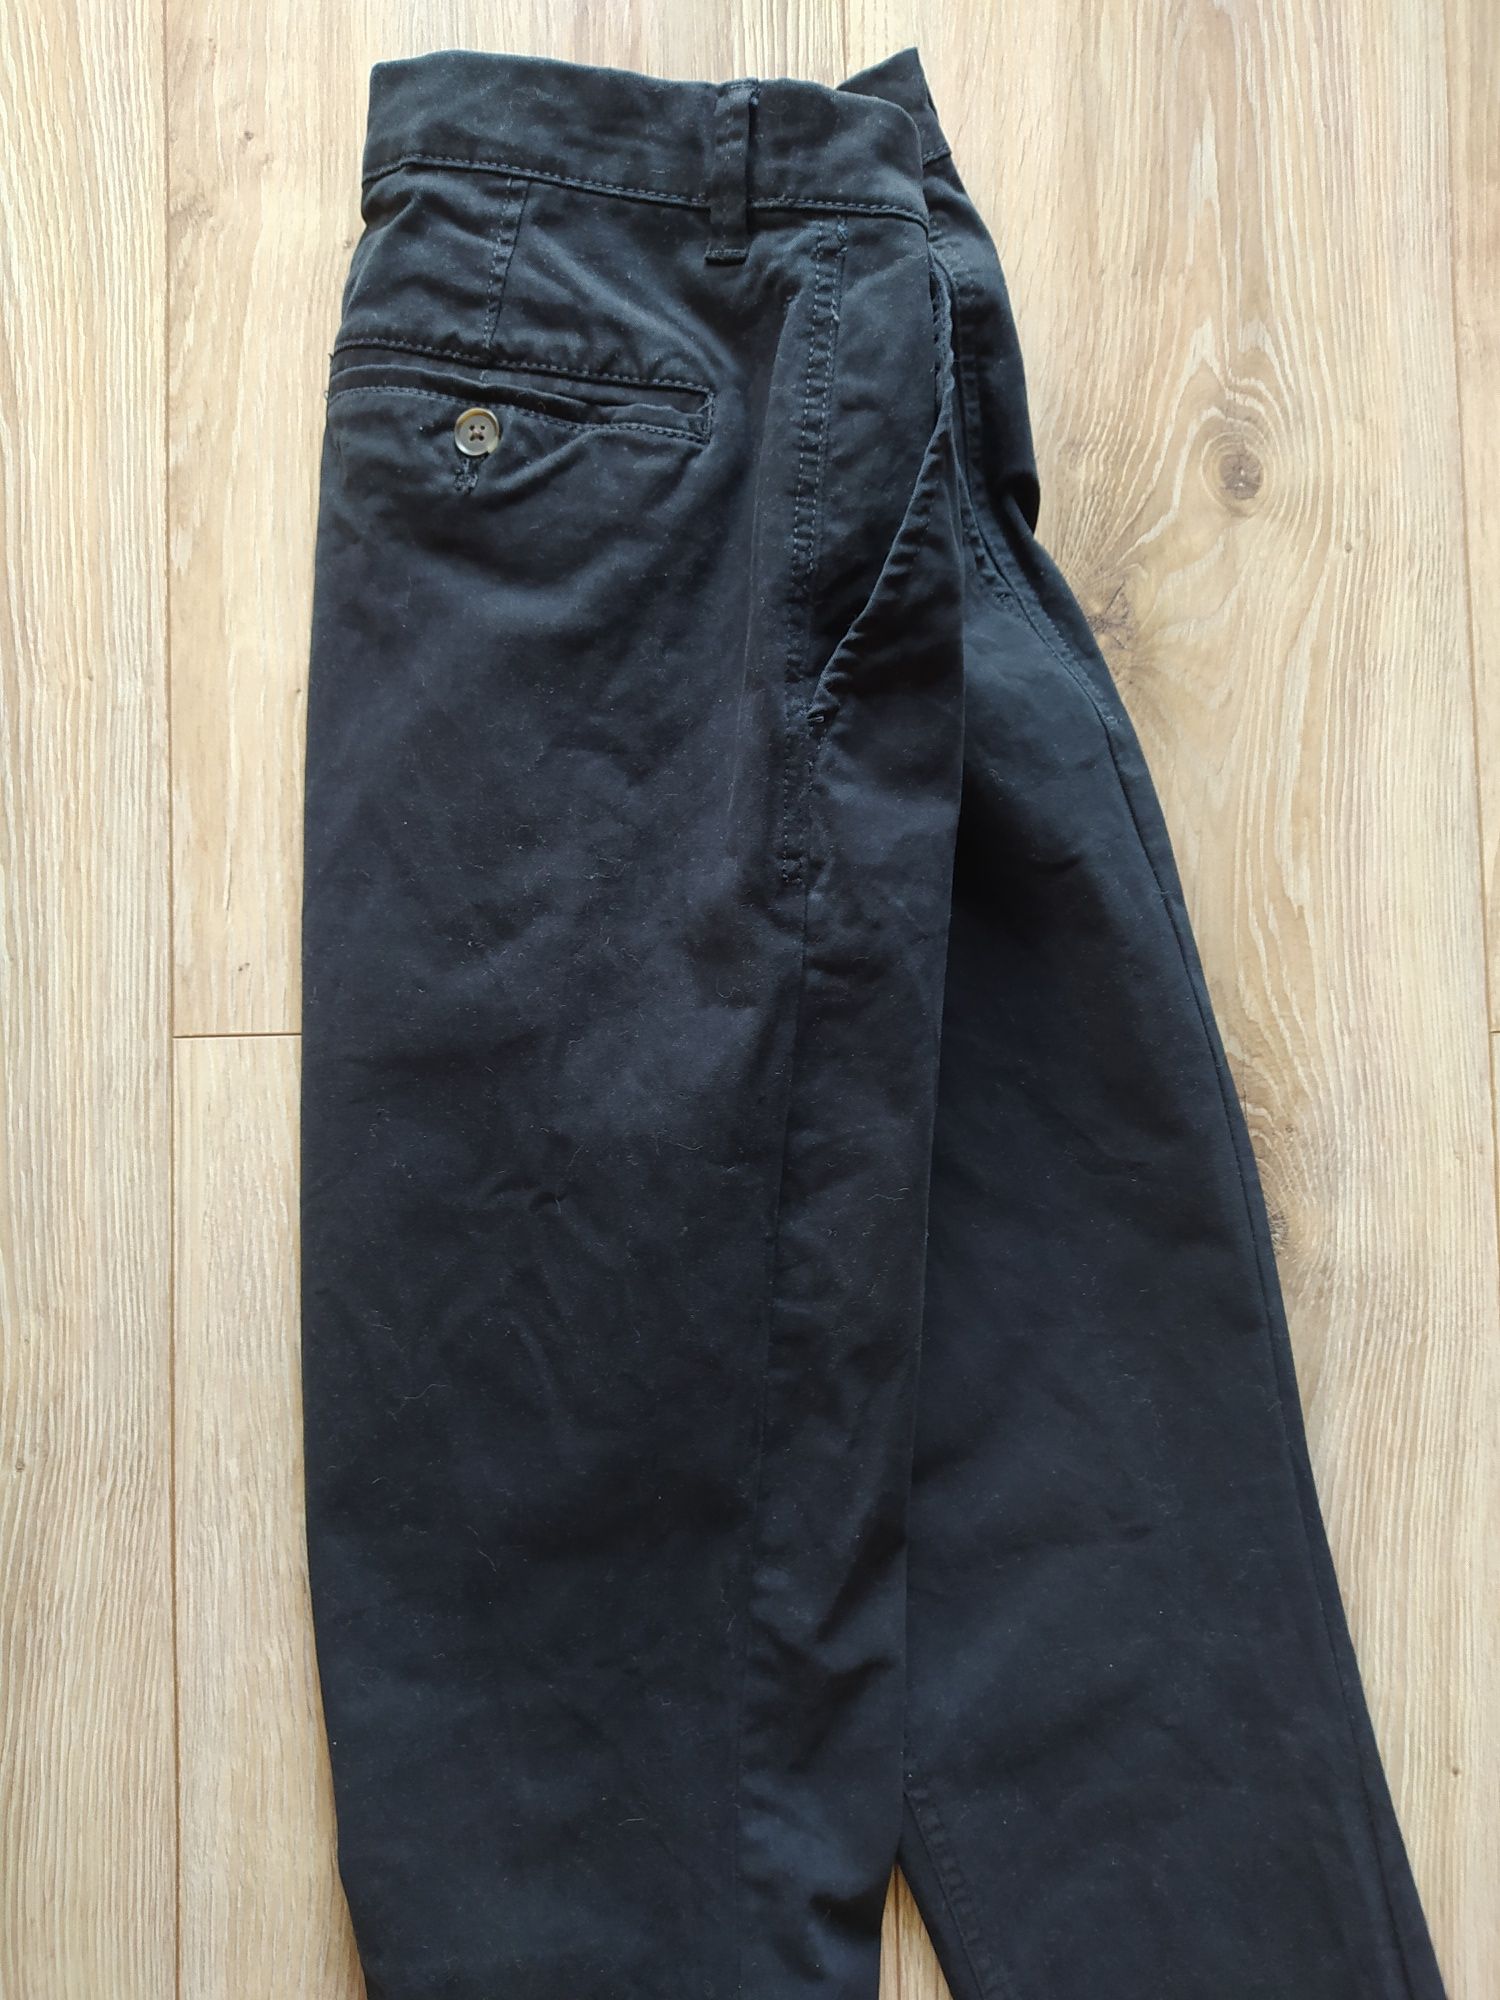 New Look - spodnie męskie, rozmiar M (32)